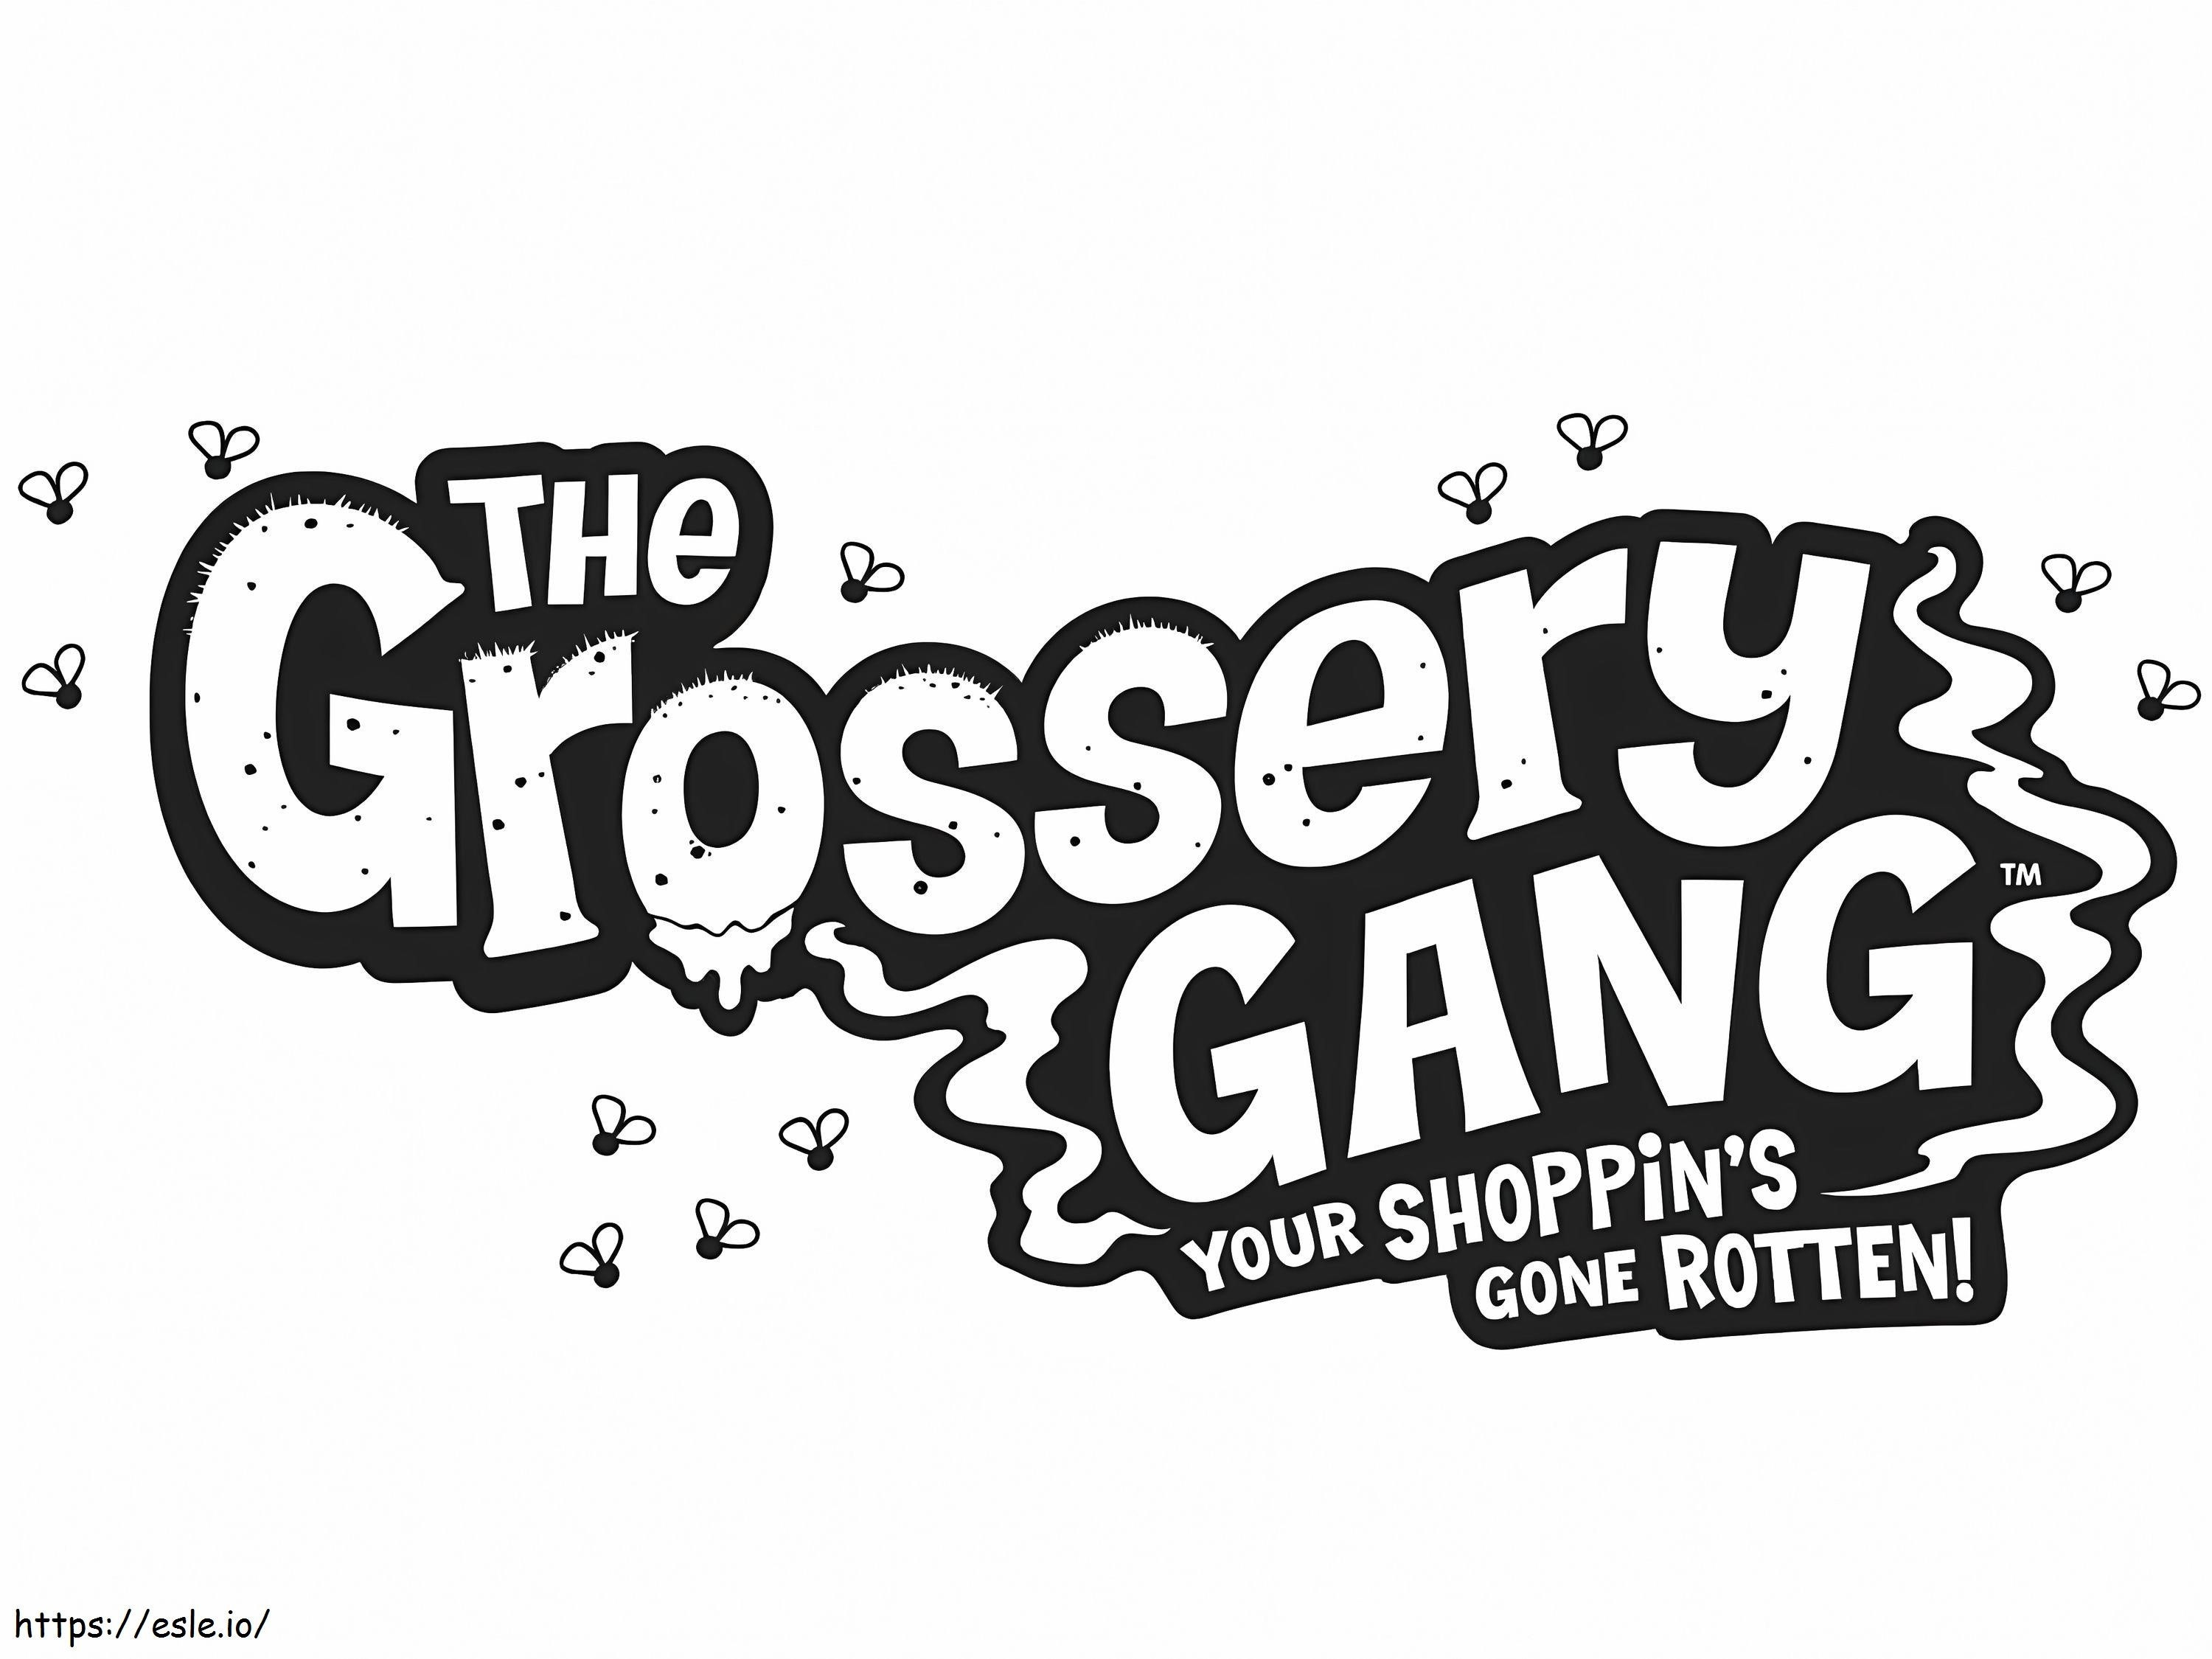 Logotipo da gangue Grossery para colorir